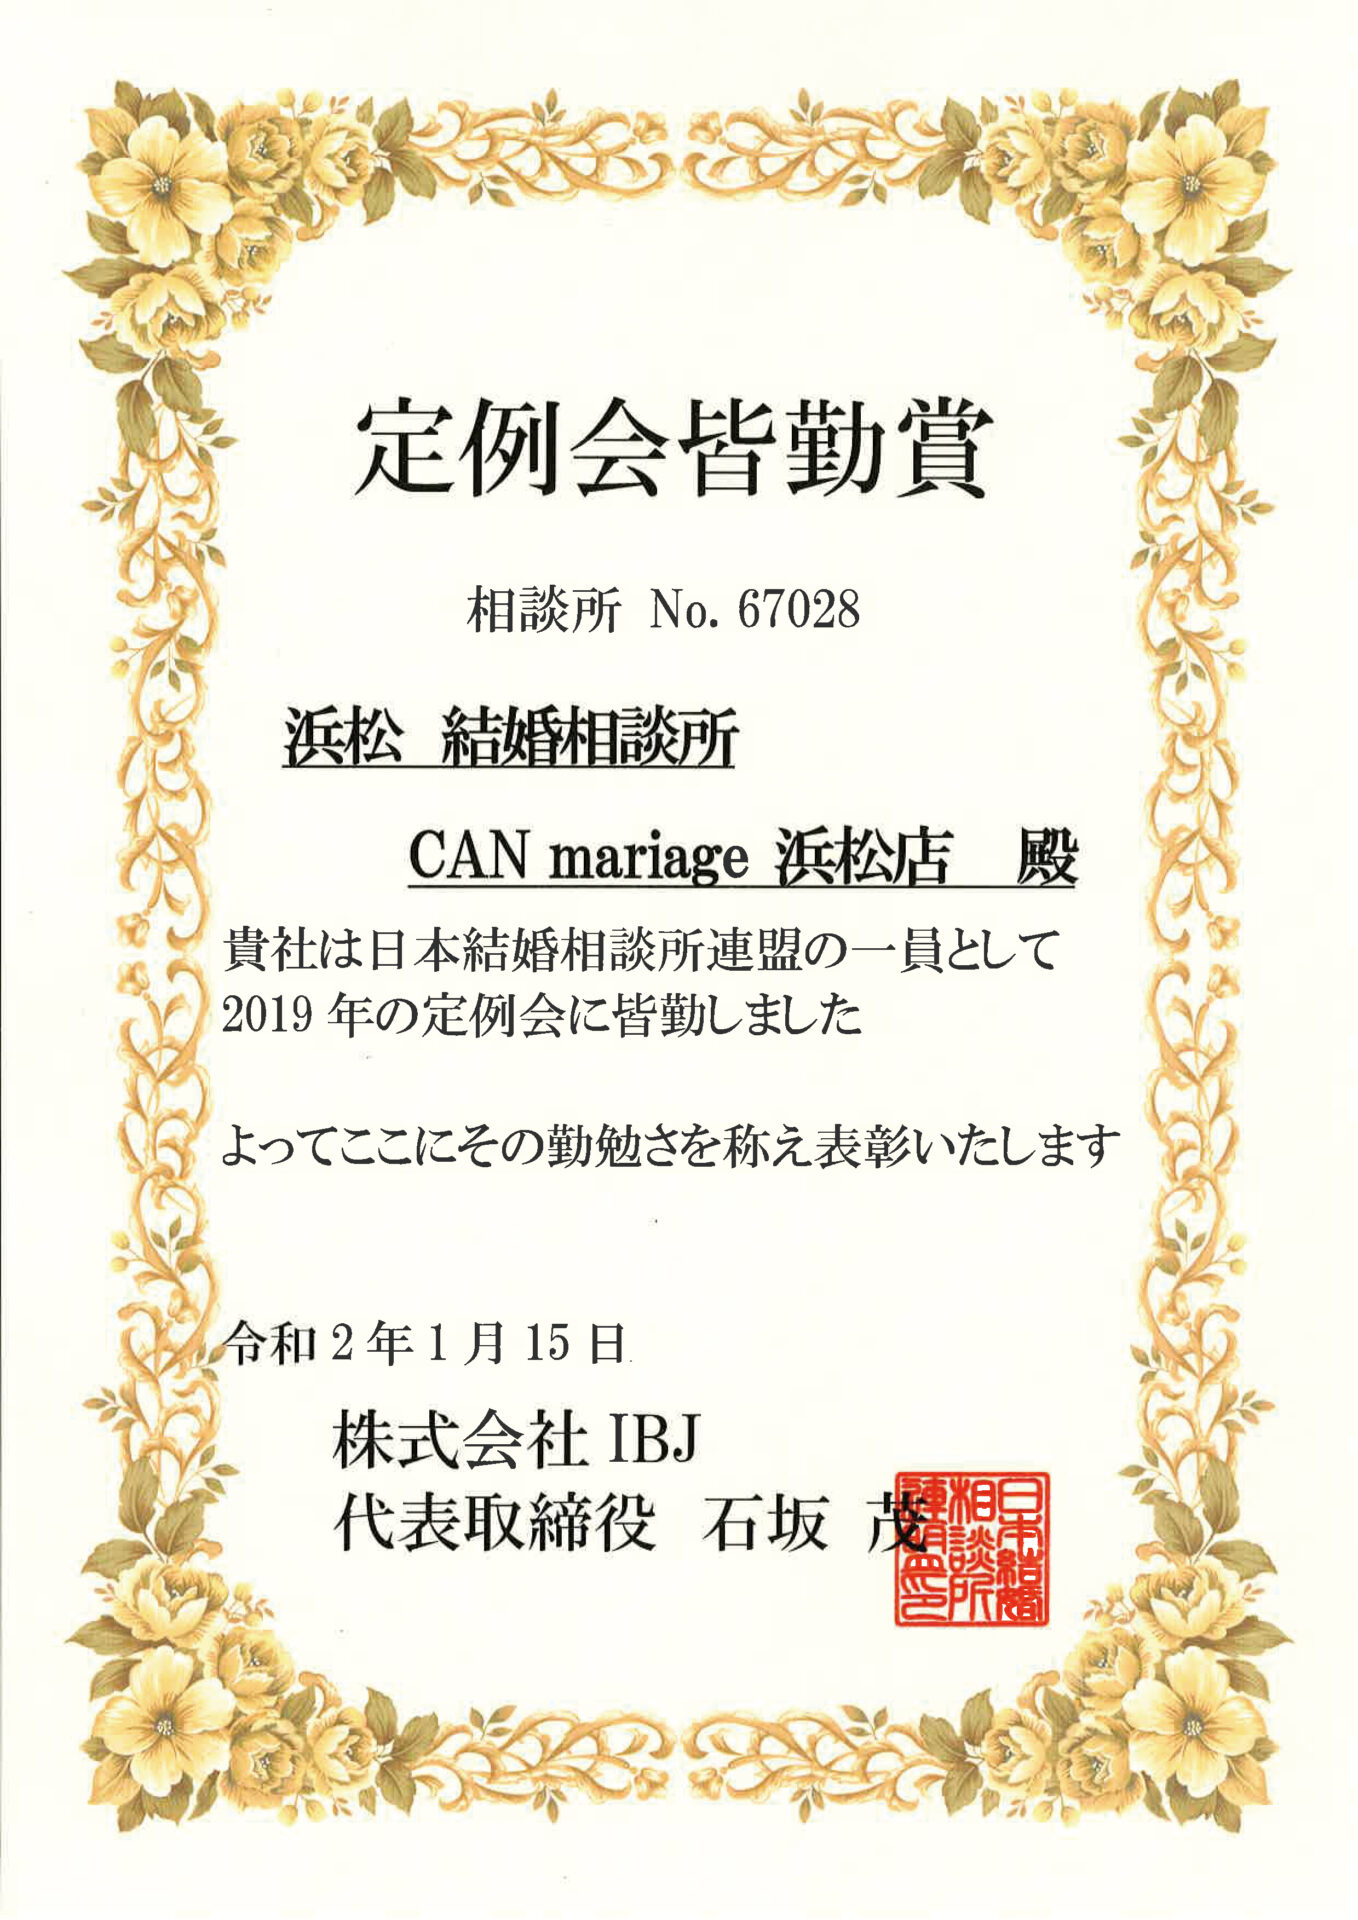 静岡浜松店 IBJ 2019年 定例会皆勤賞を受賞いたしました。